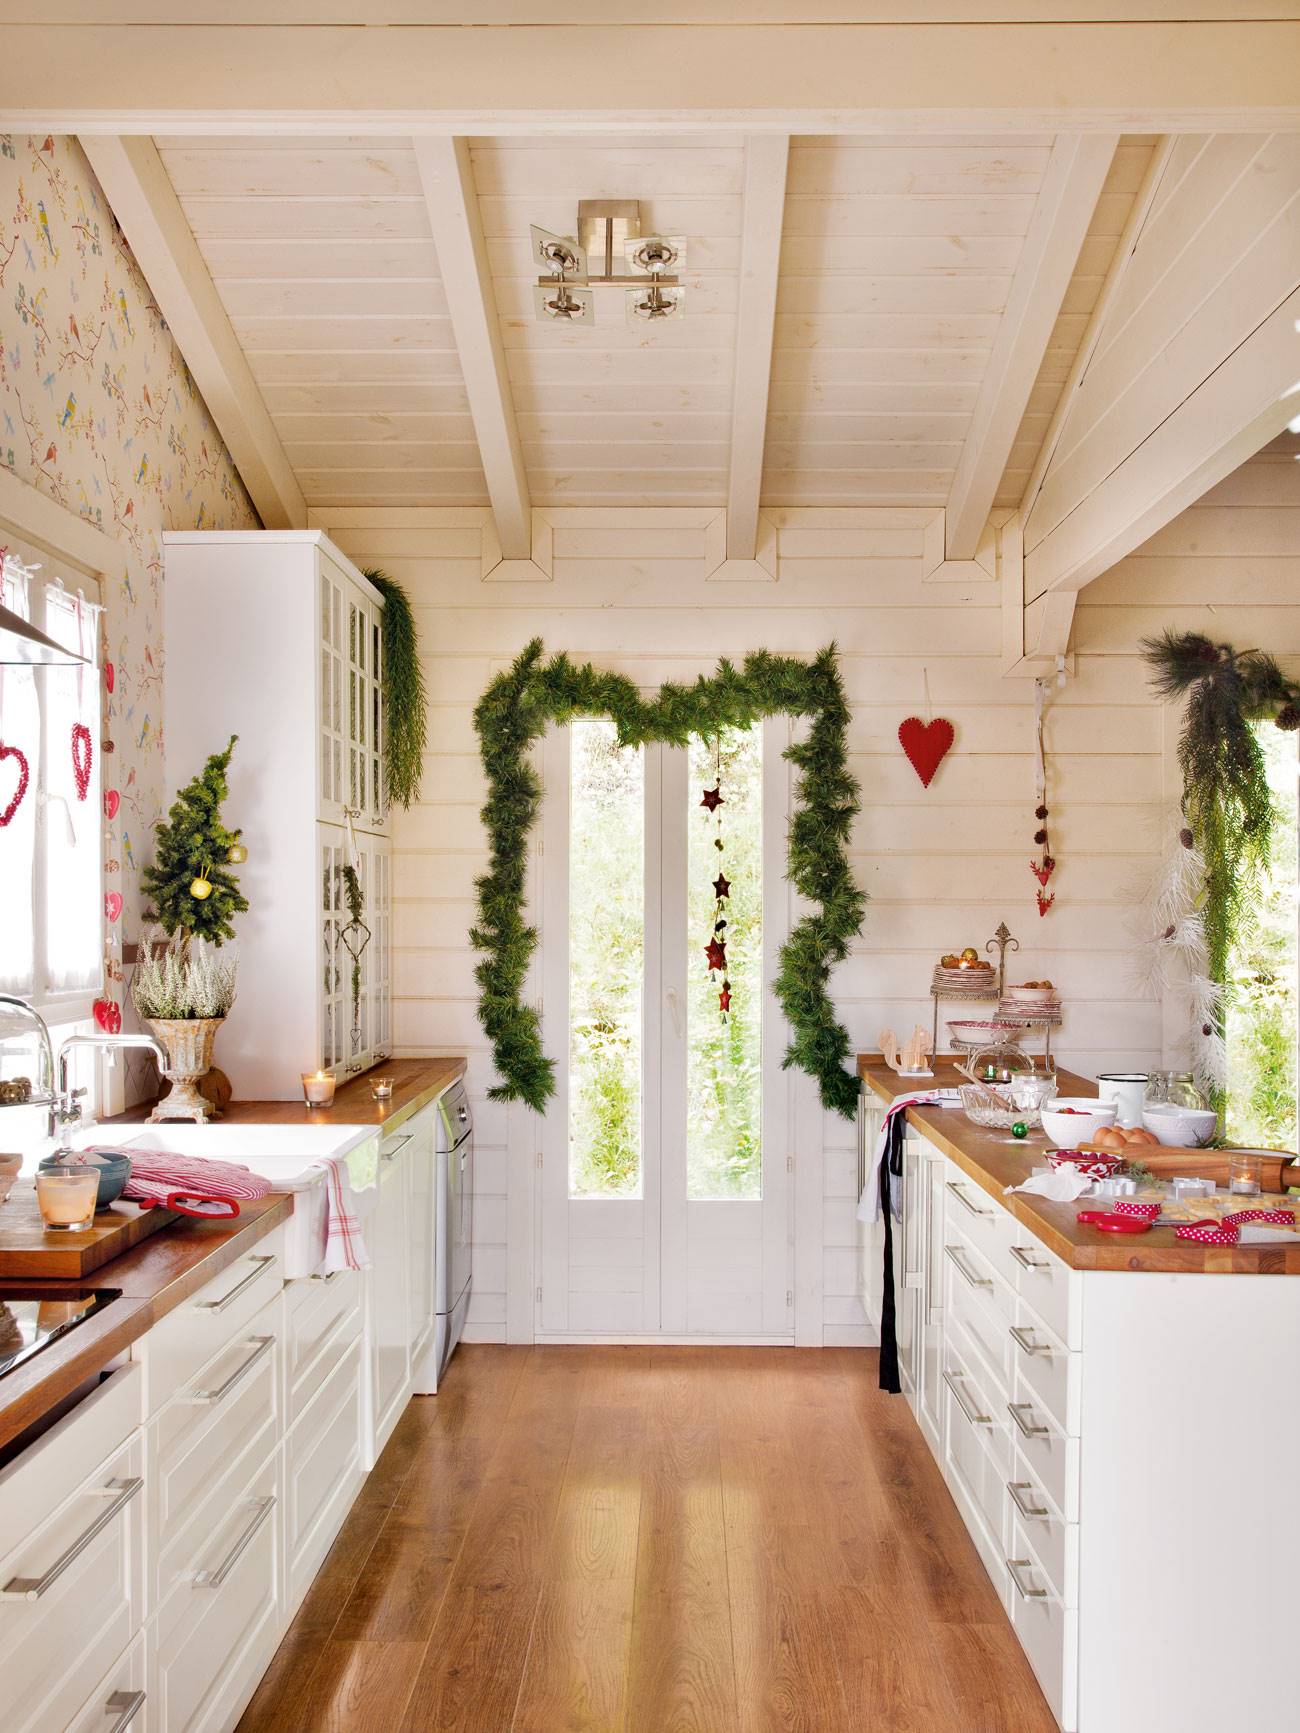 Cocina blanca revestida de madera y decorada de Navidad